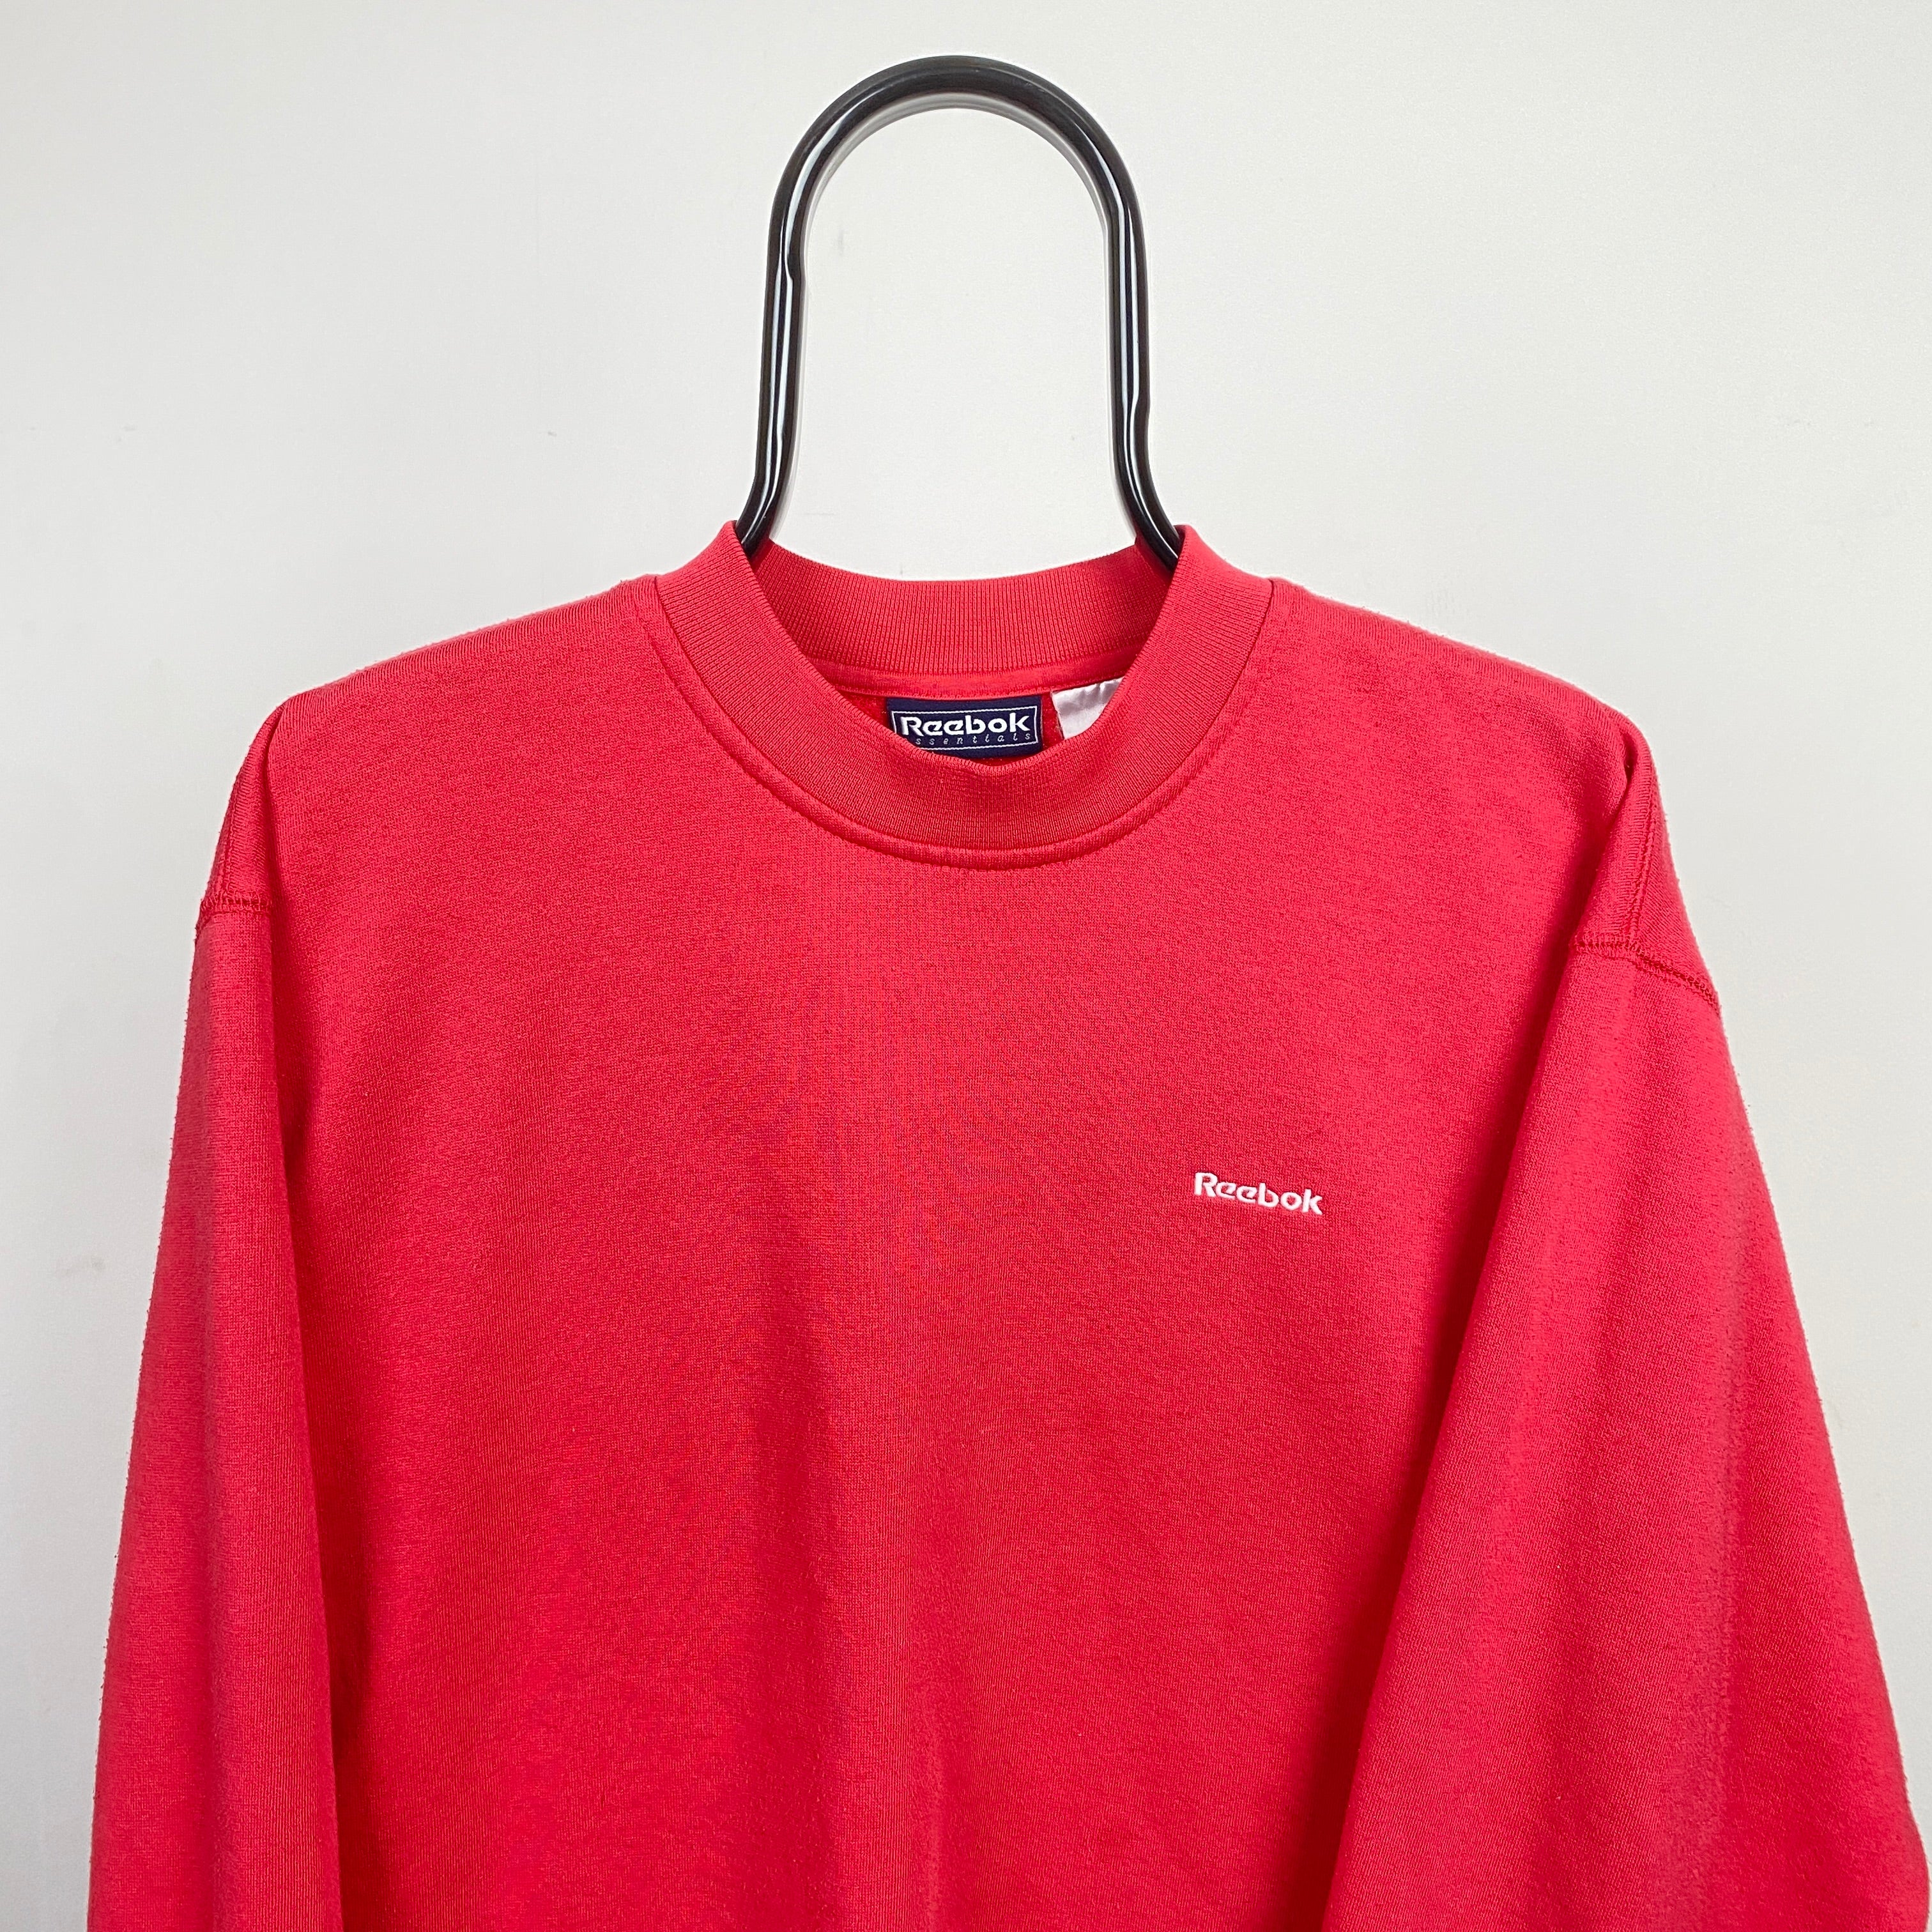 Retro Reebok Sweatshirt Pink Large